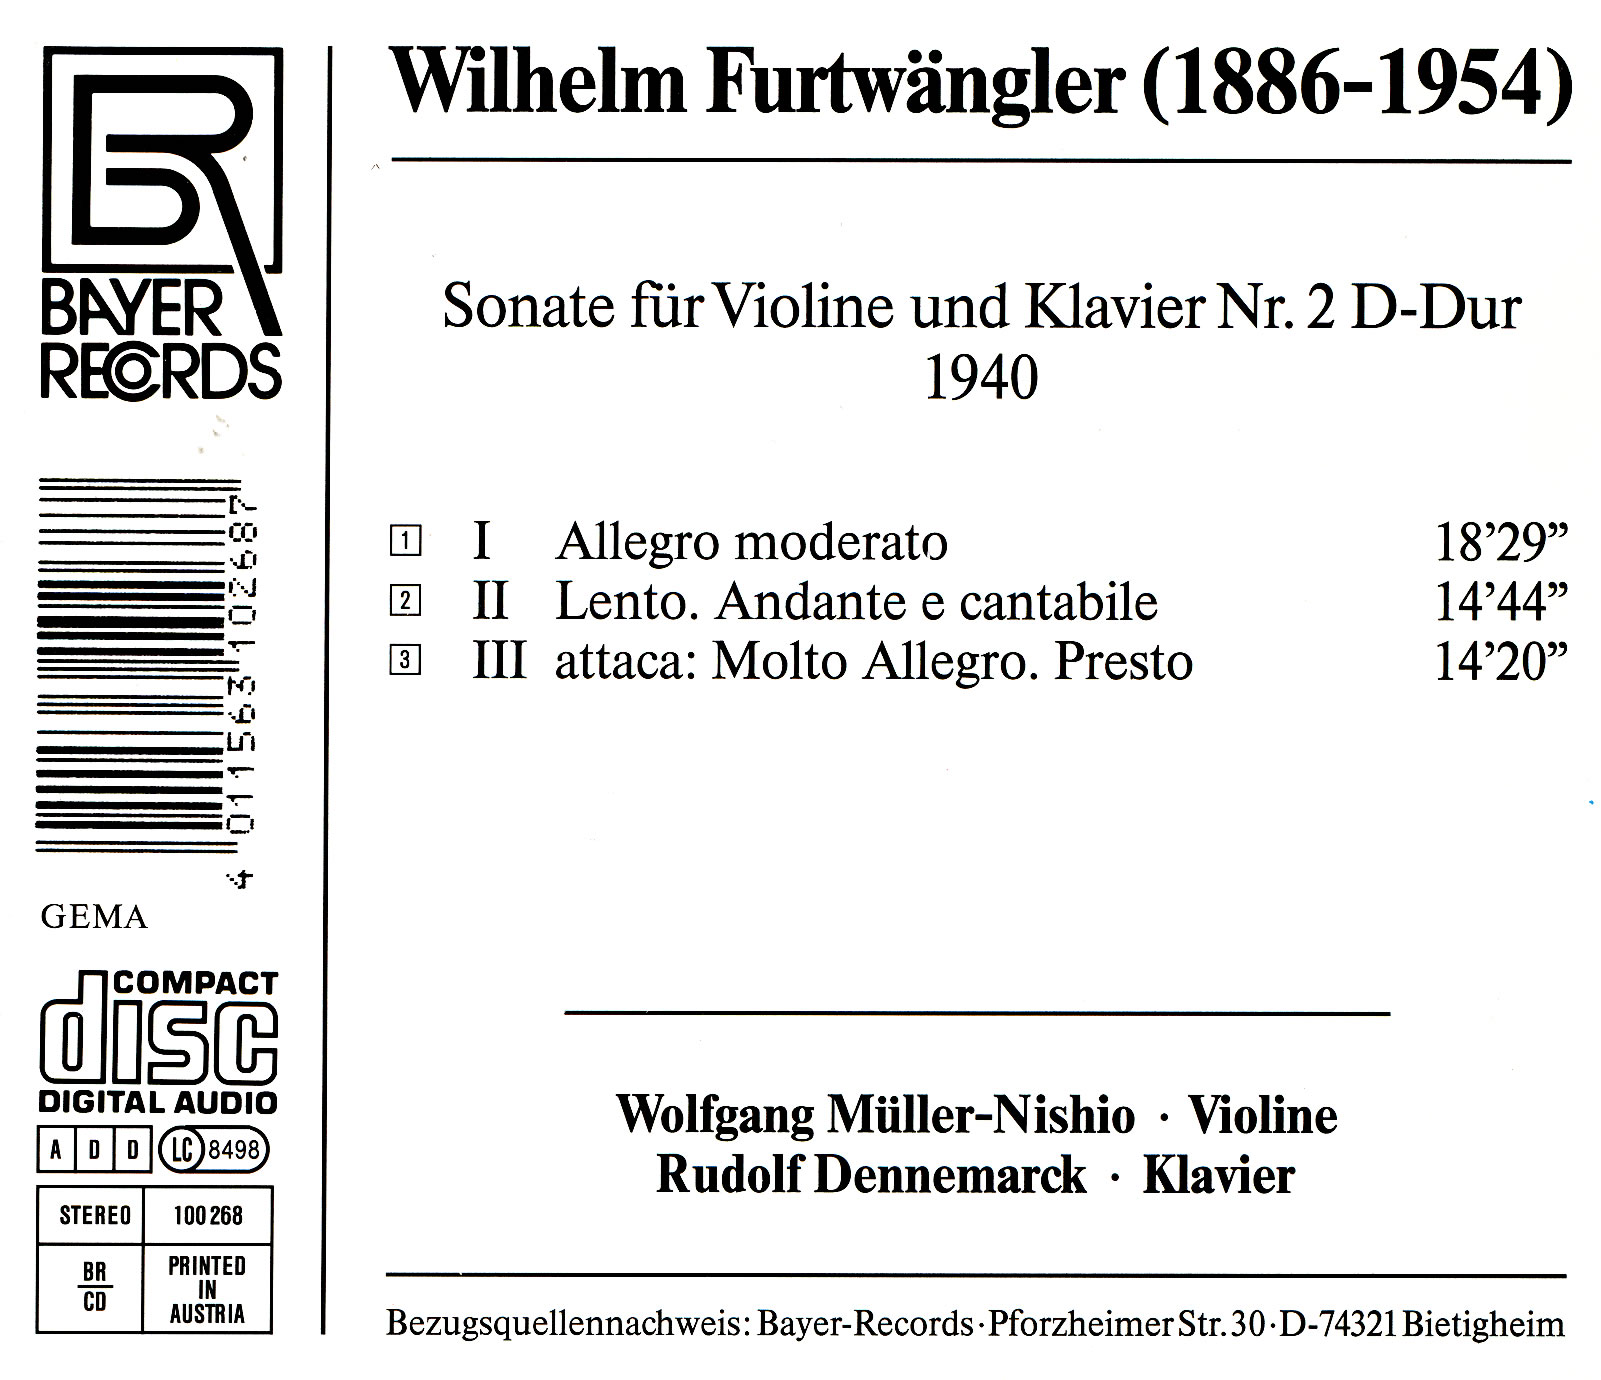 Wilhelm Furtwängler - Violinsonate